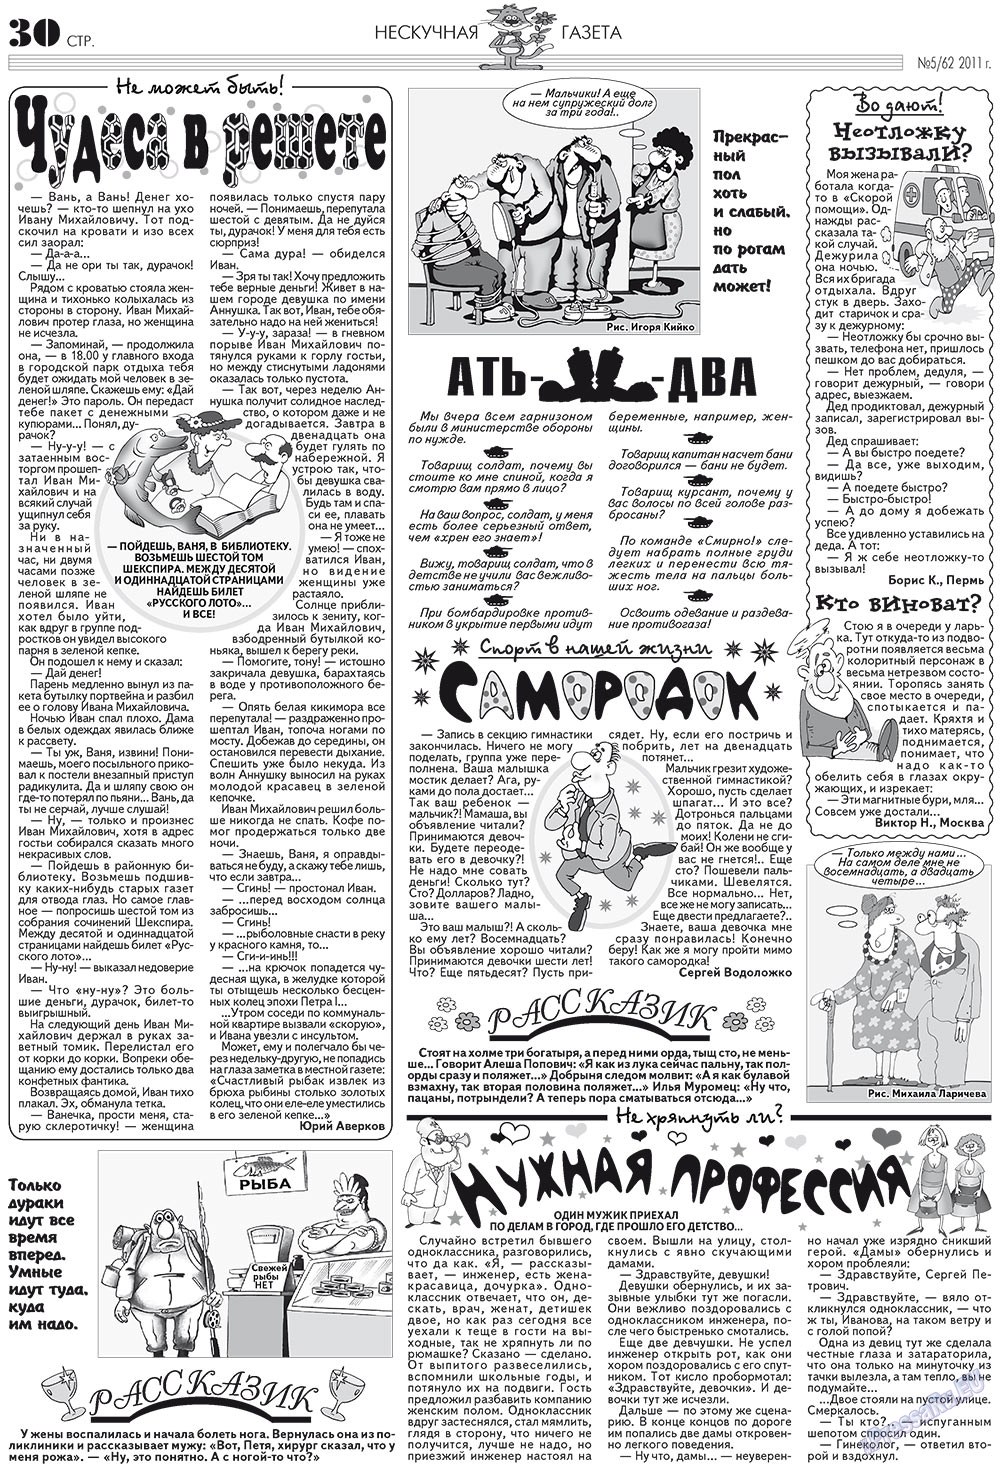 Нескучная газета (журнал). 2011 год, номер 5, стр. 26